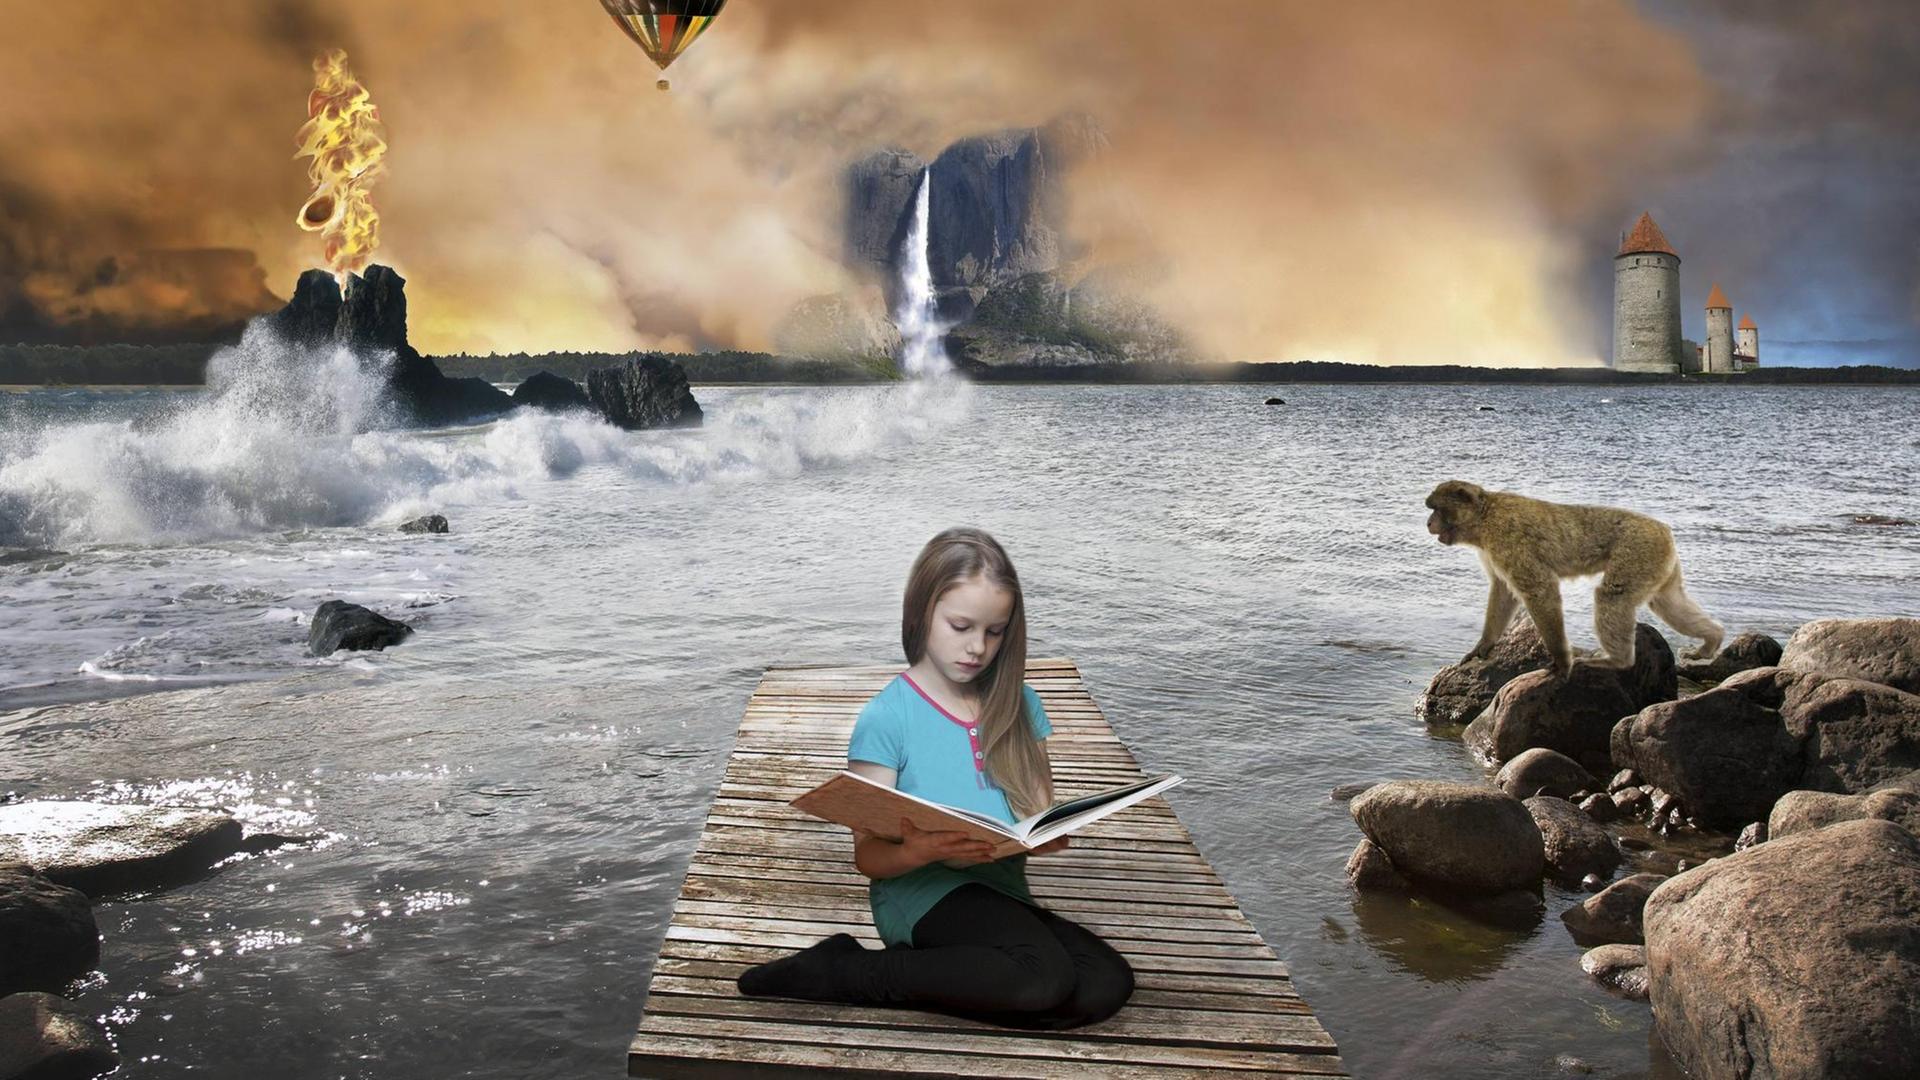 Eine zauberhafte Sequenz aus einem Traum mit einem Mädchen am Meer mit Felsen, umgeben von einem Affen und einem Heißluftballon.